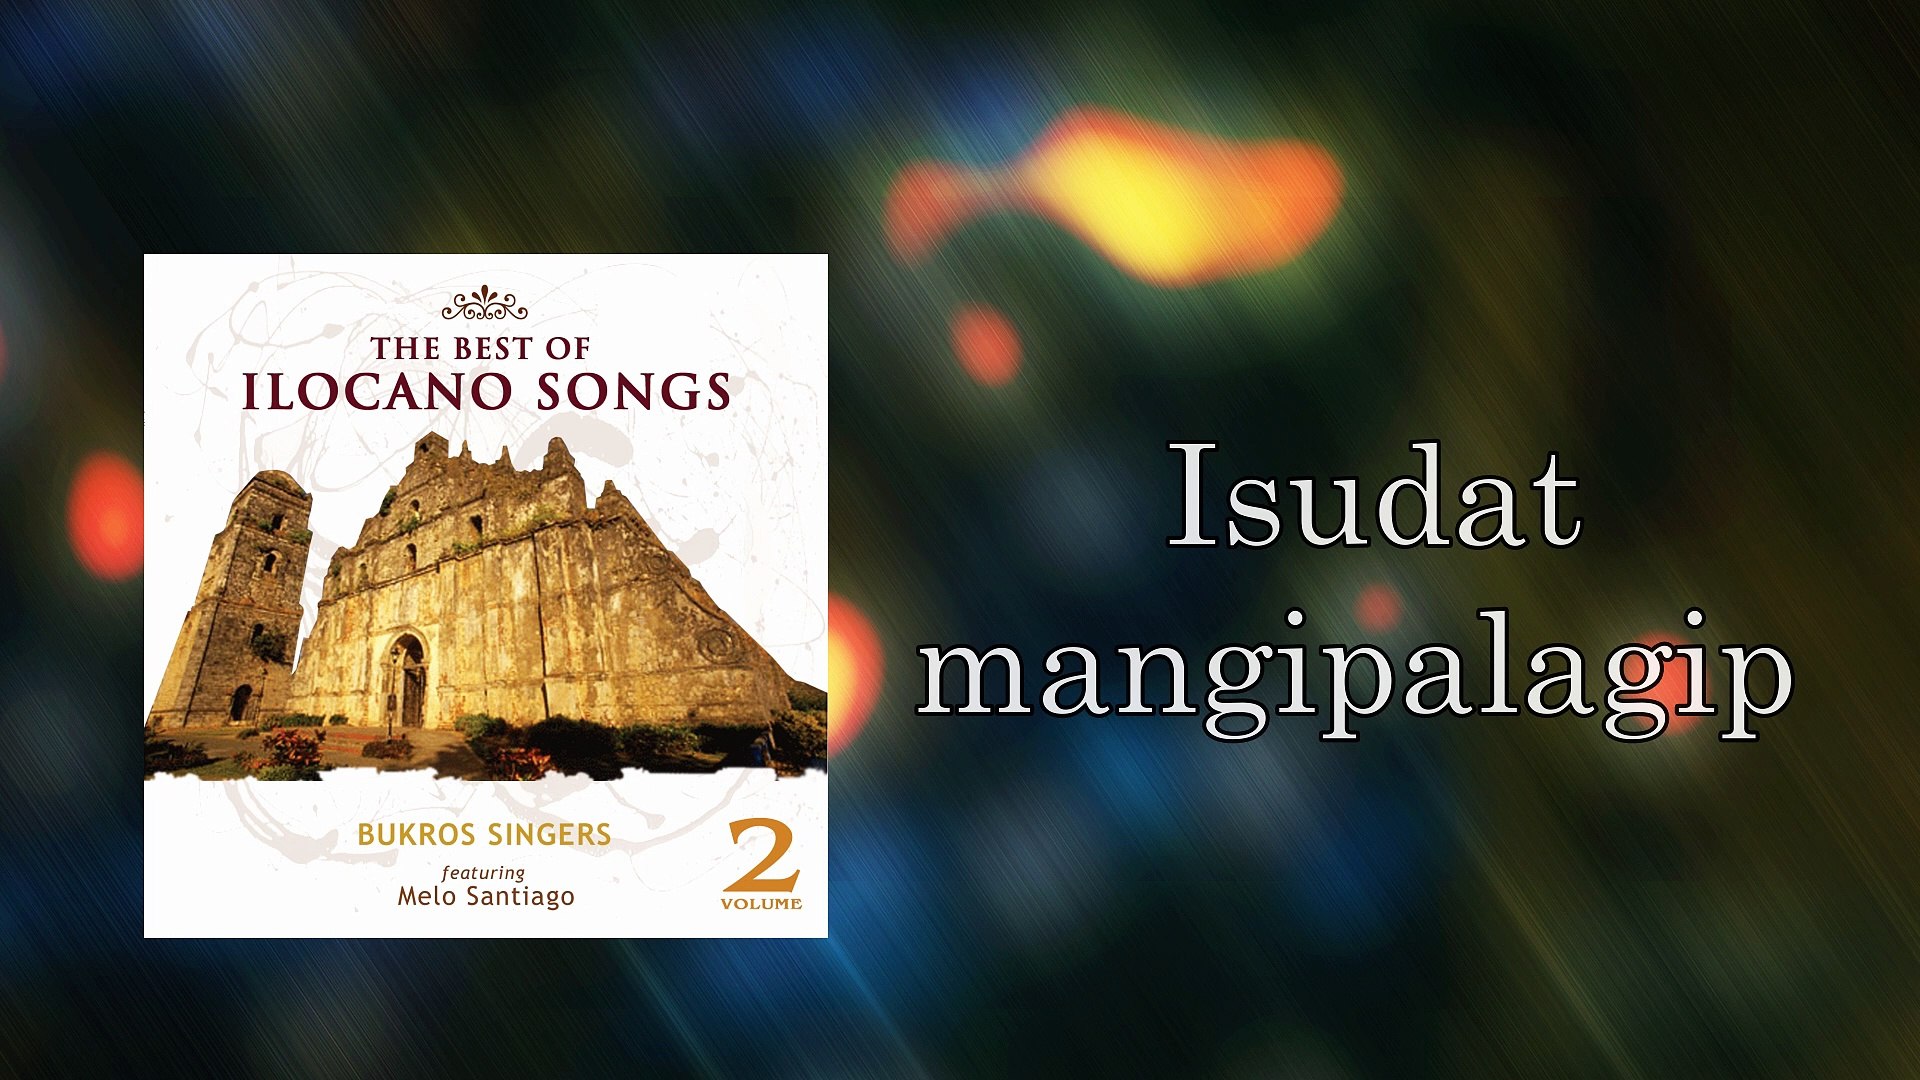 Bukros Singers - Malaglagip Ka Laeng (Lyrics Video)